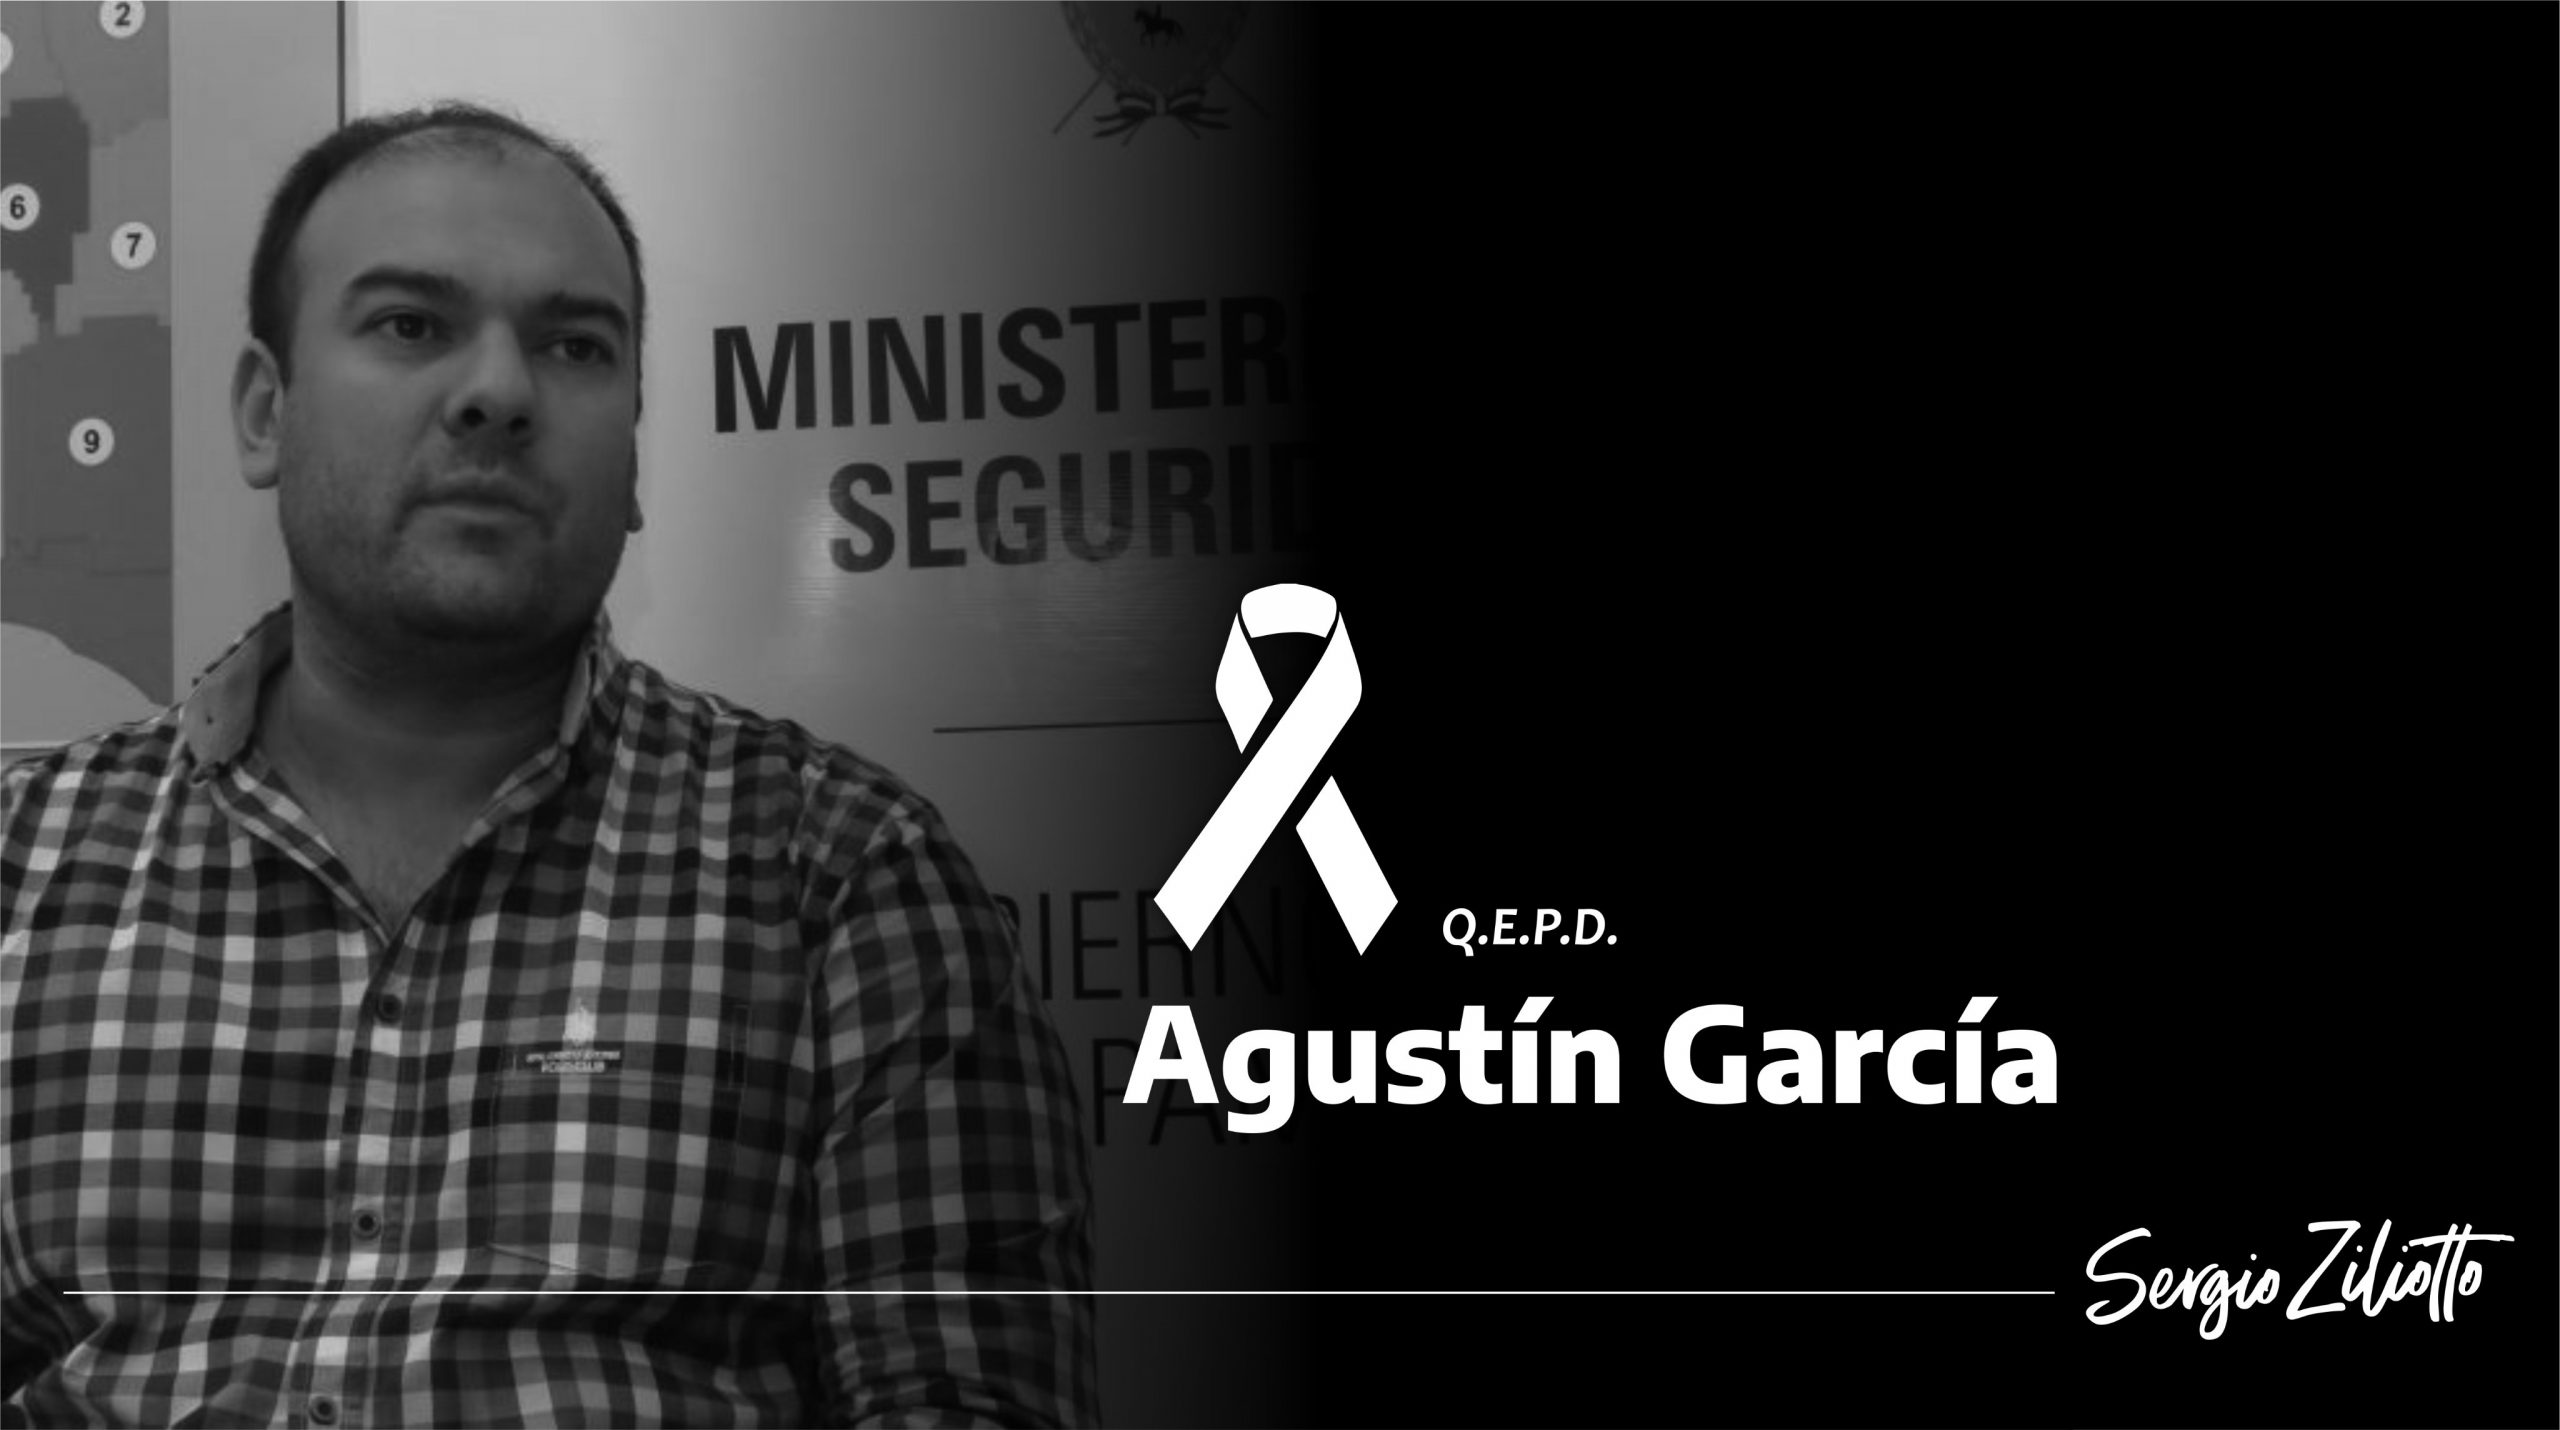 Ziliotto y la muerte de Agustín García: “Dar pelea día a día te arrancó la vida”